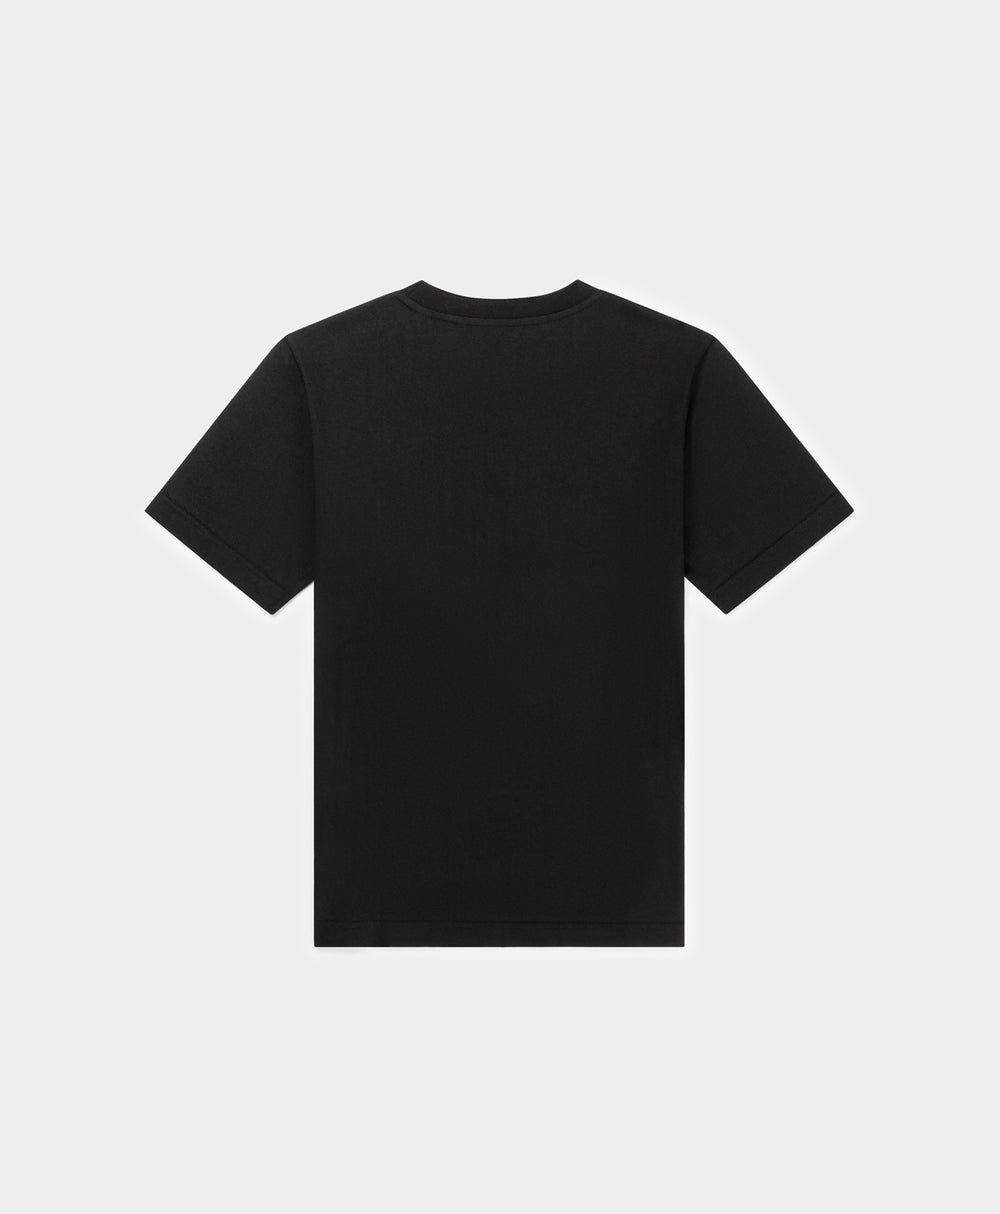 DP - Black Raisa T-Shirt - Packshot - Rear